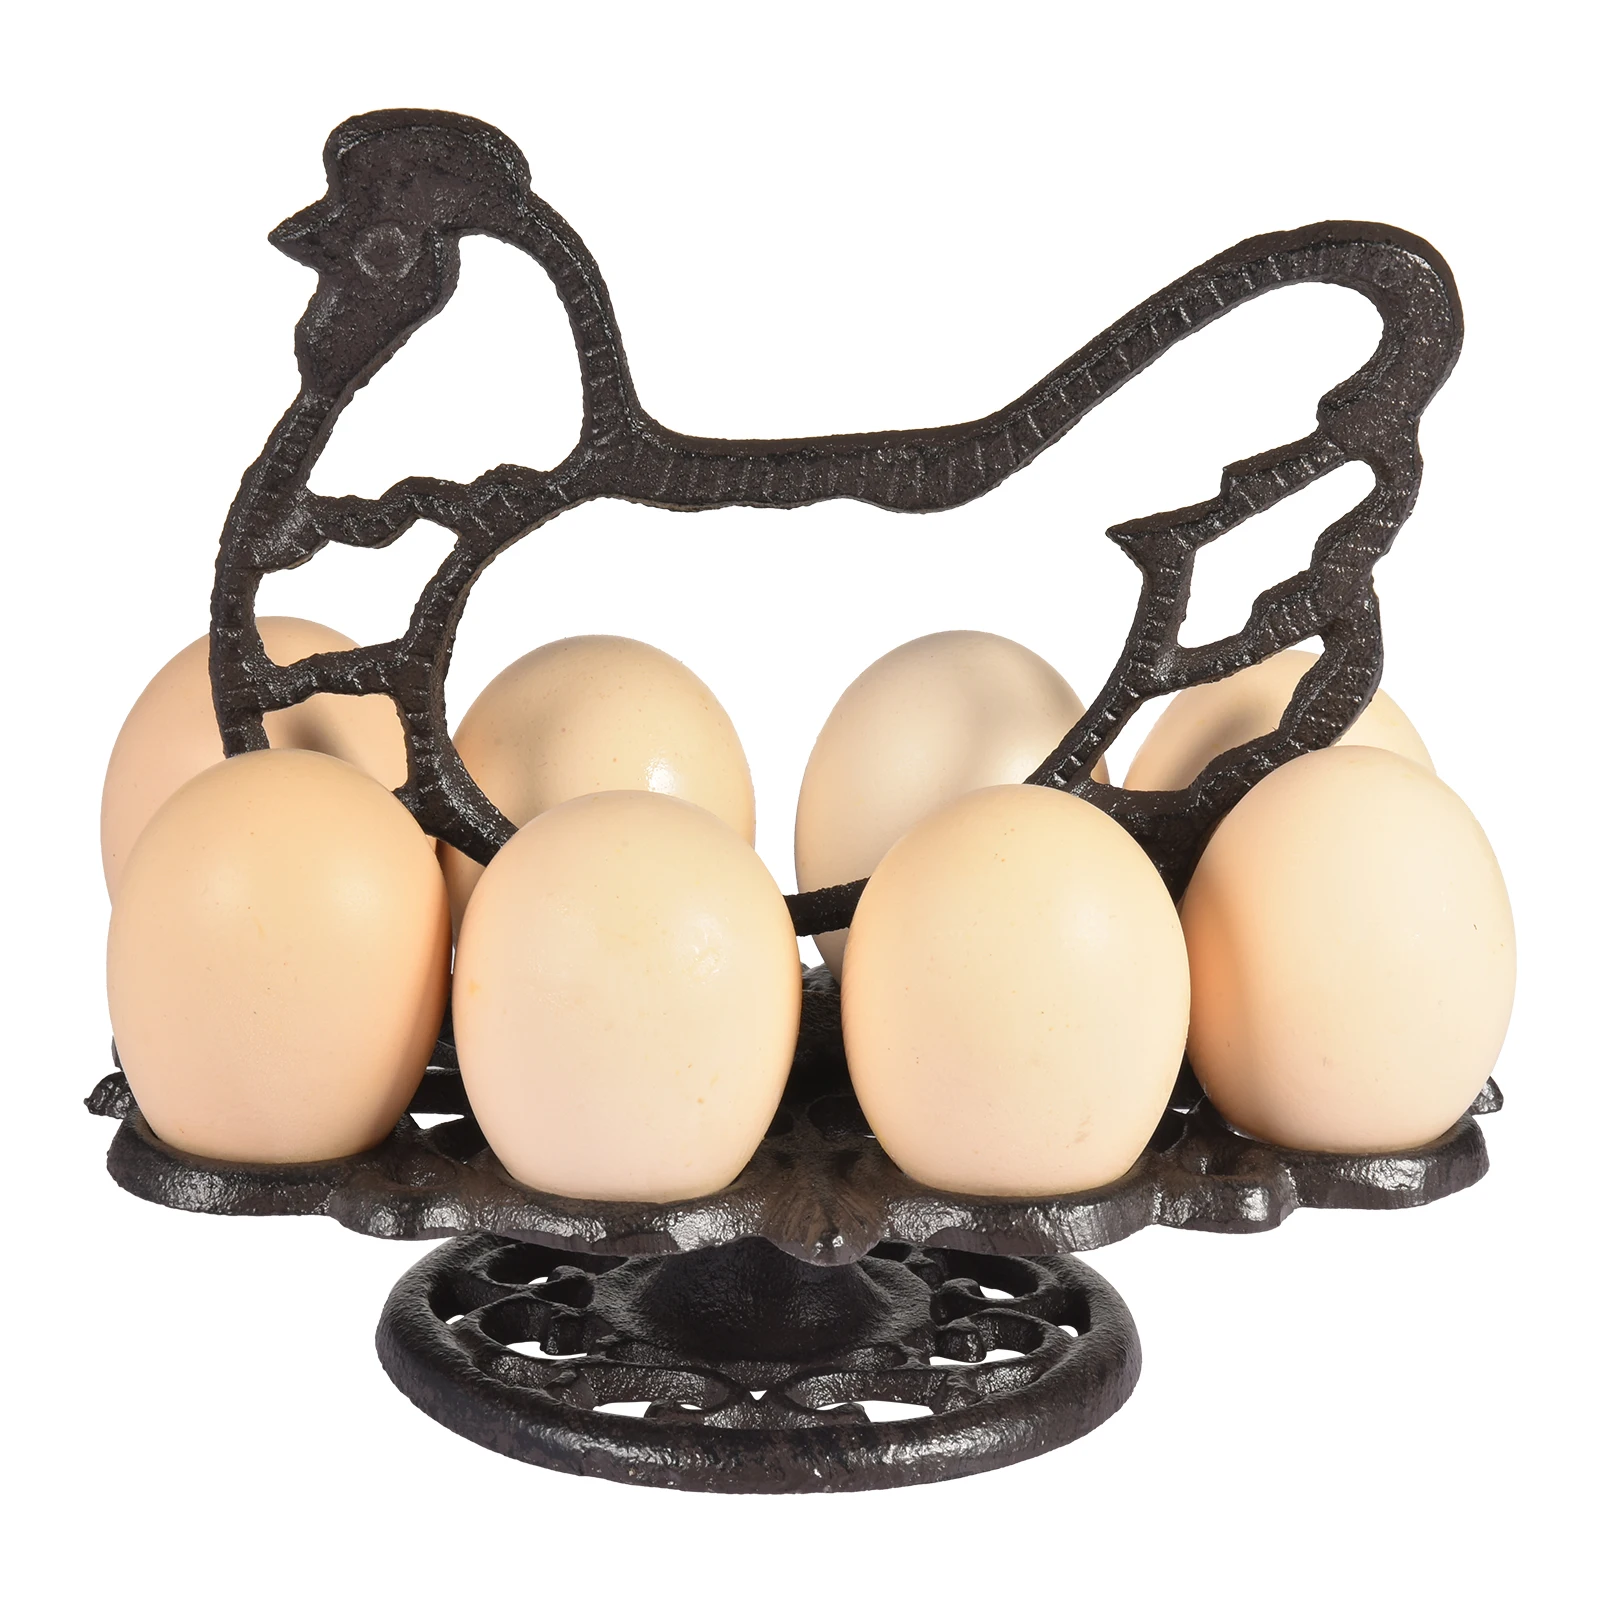 

Iron Eggs Holder Metal Basket Egg Skelter Dispenser Rack 2 Tier Freestanding Display Stand Retro Dark Brown Color Vintage